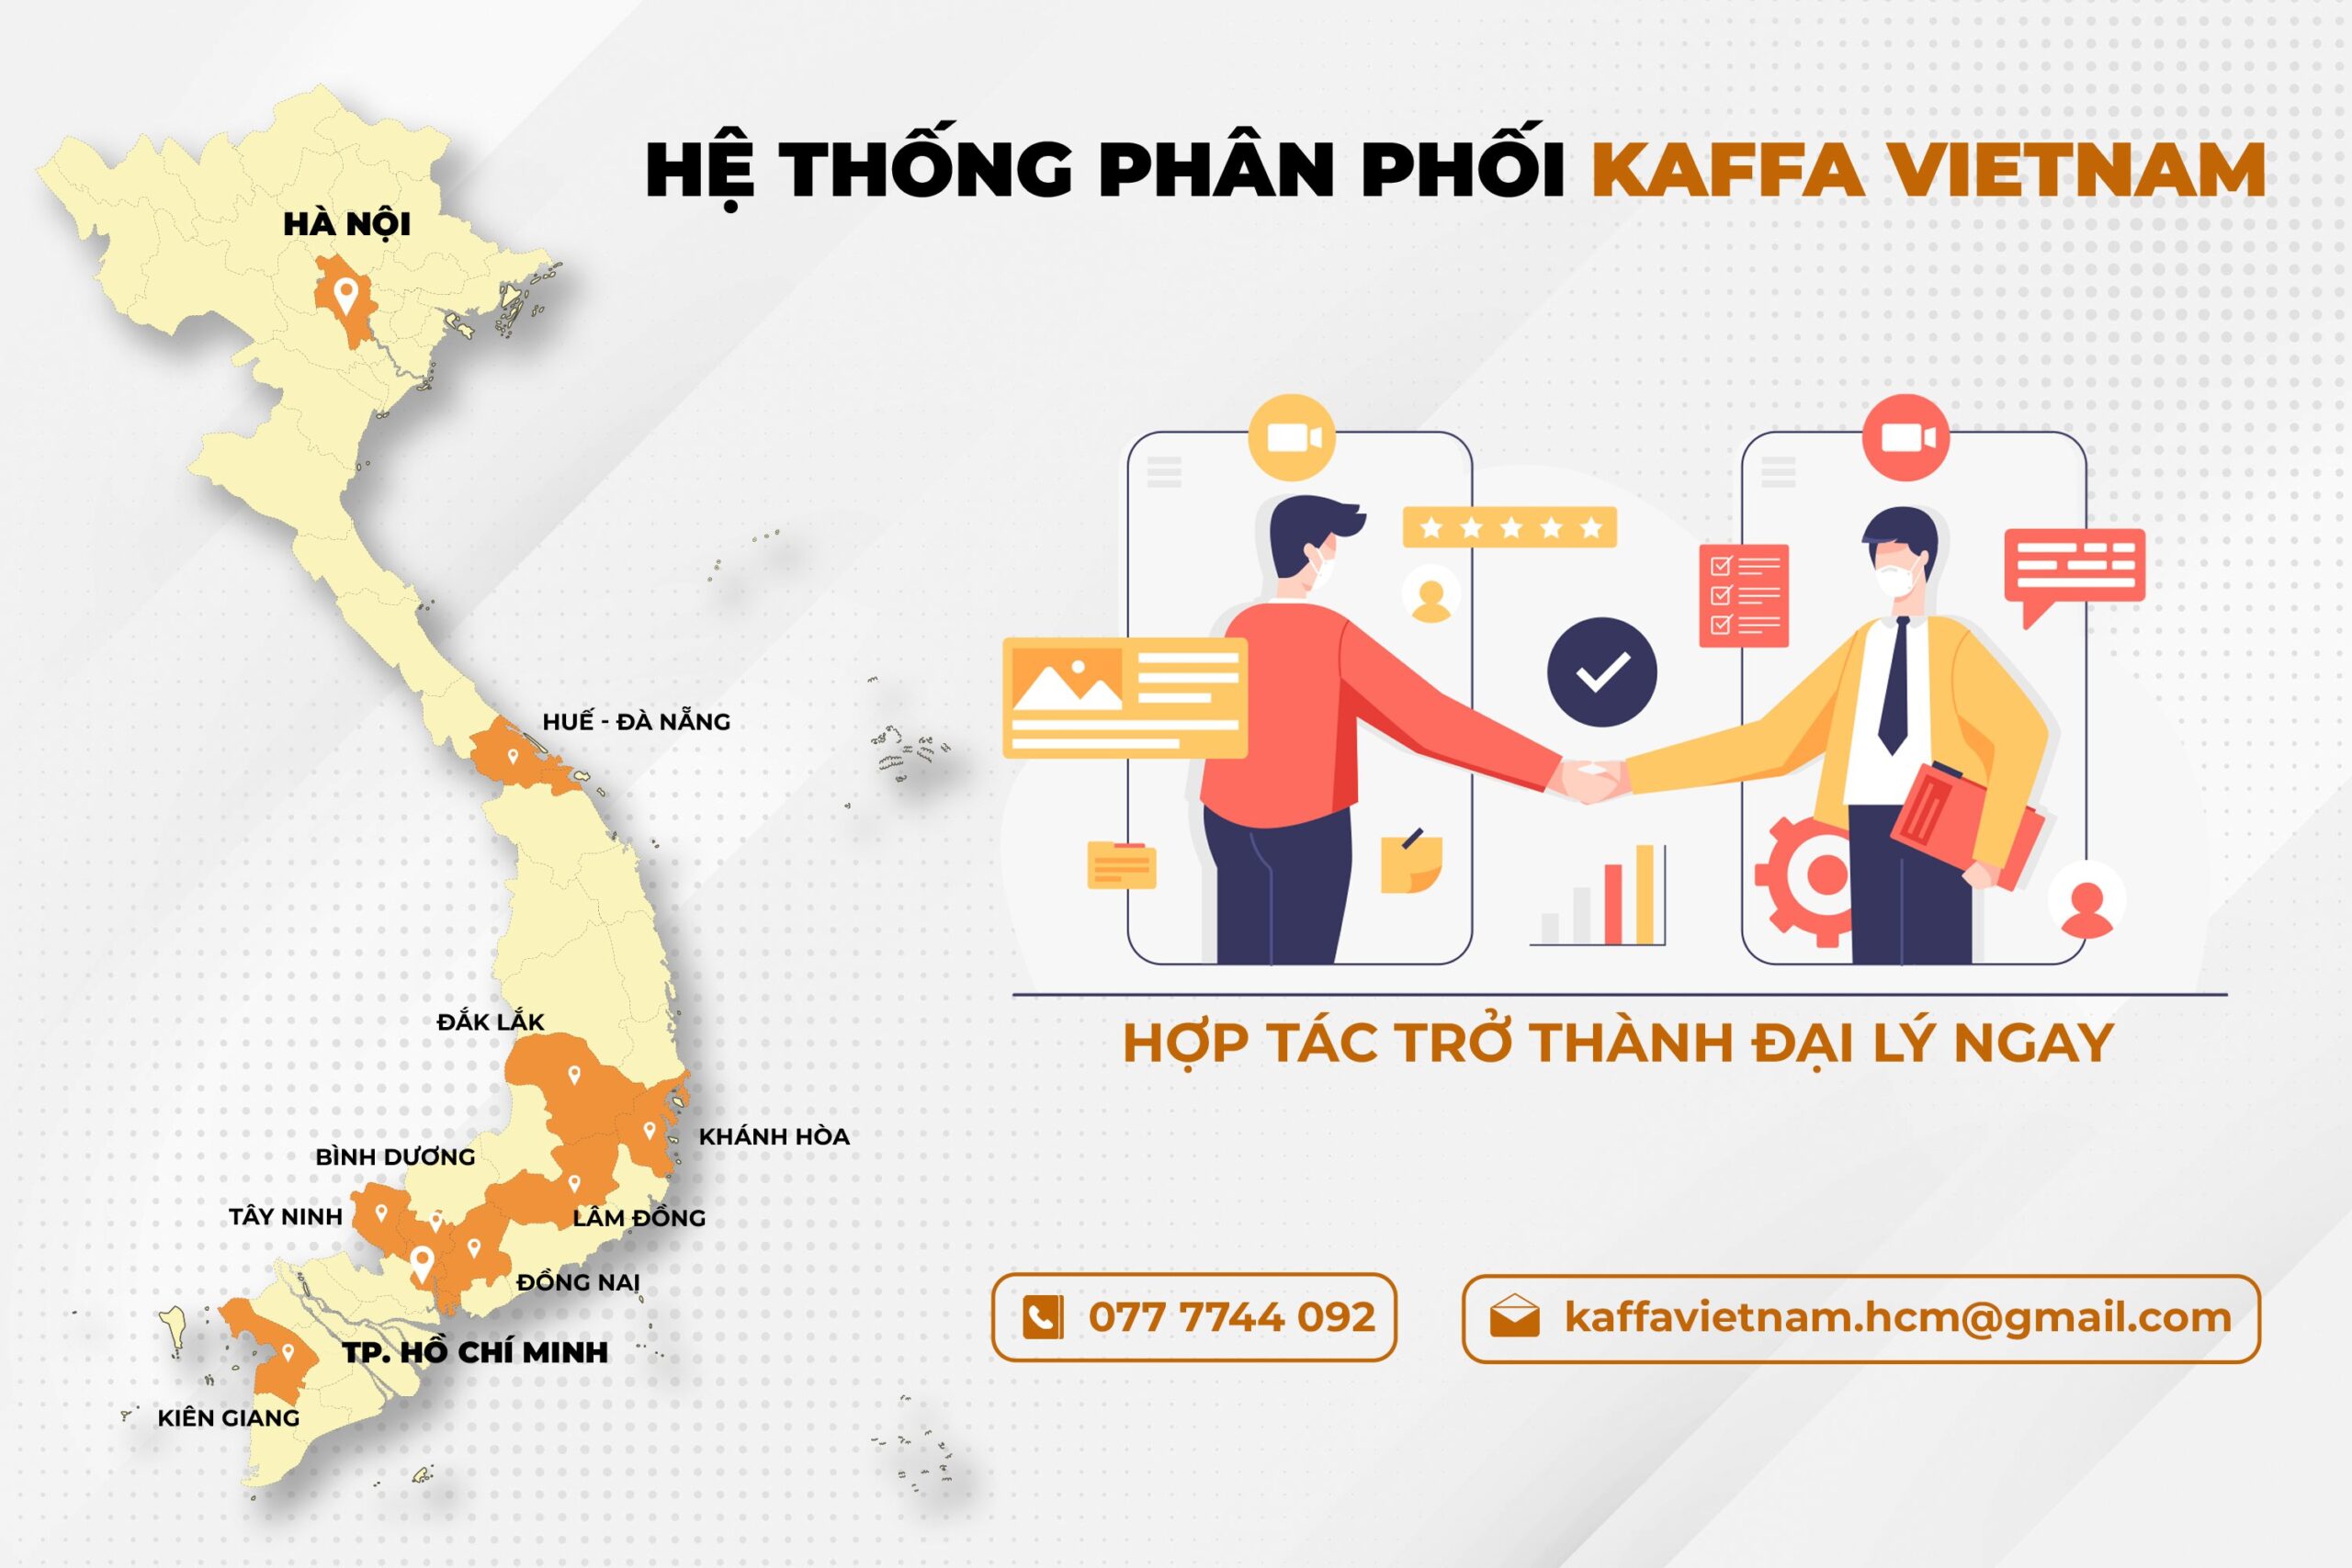 he-thong-phan-phoi-kaffa